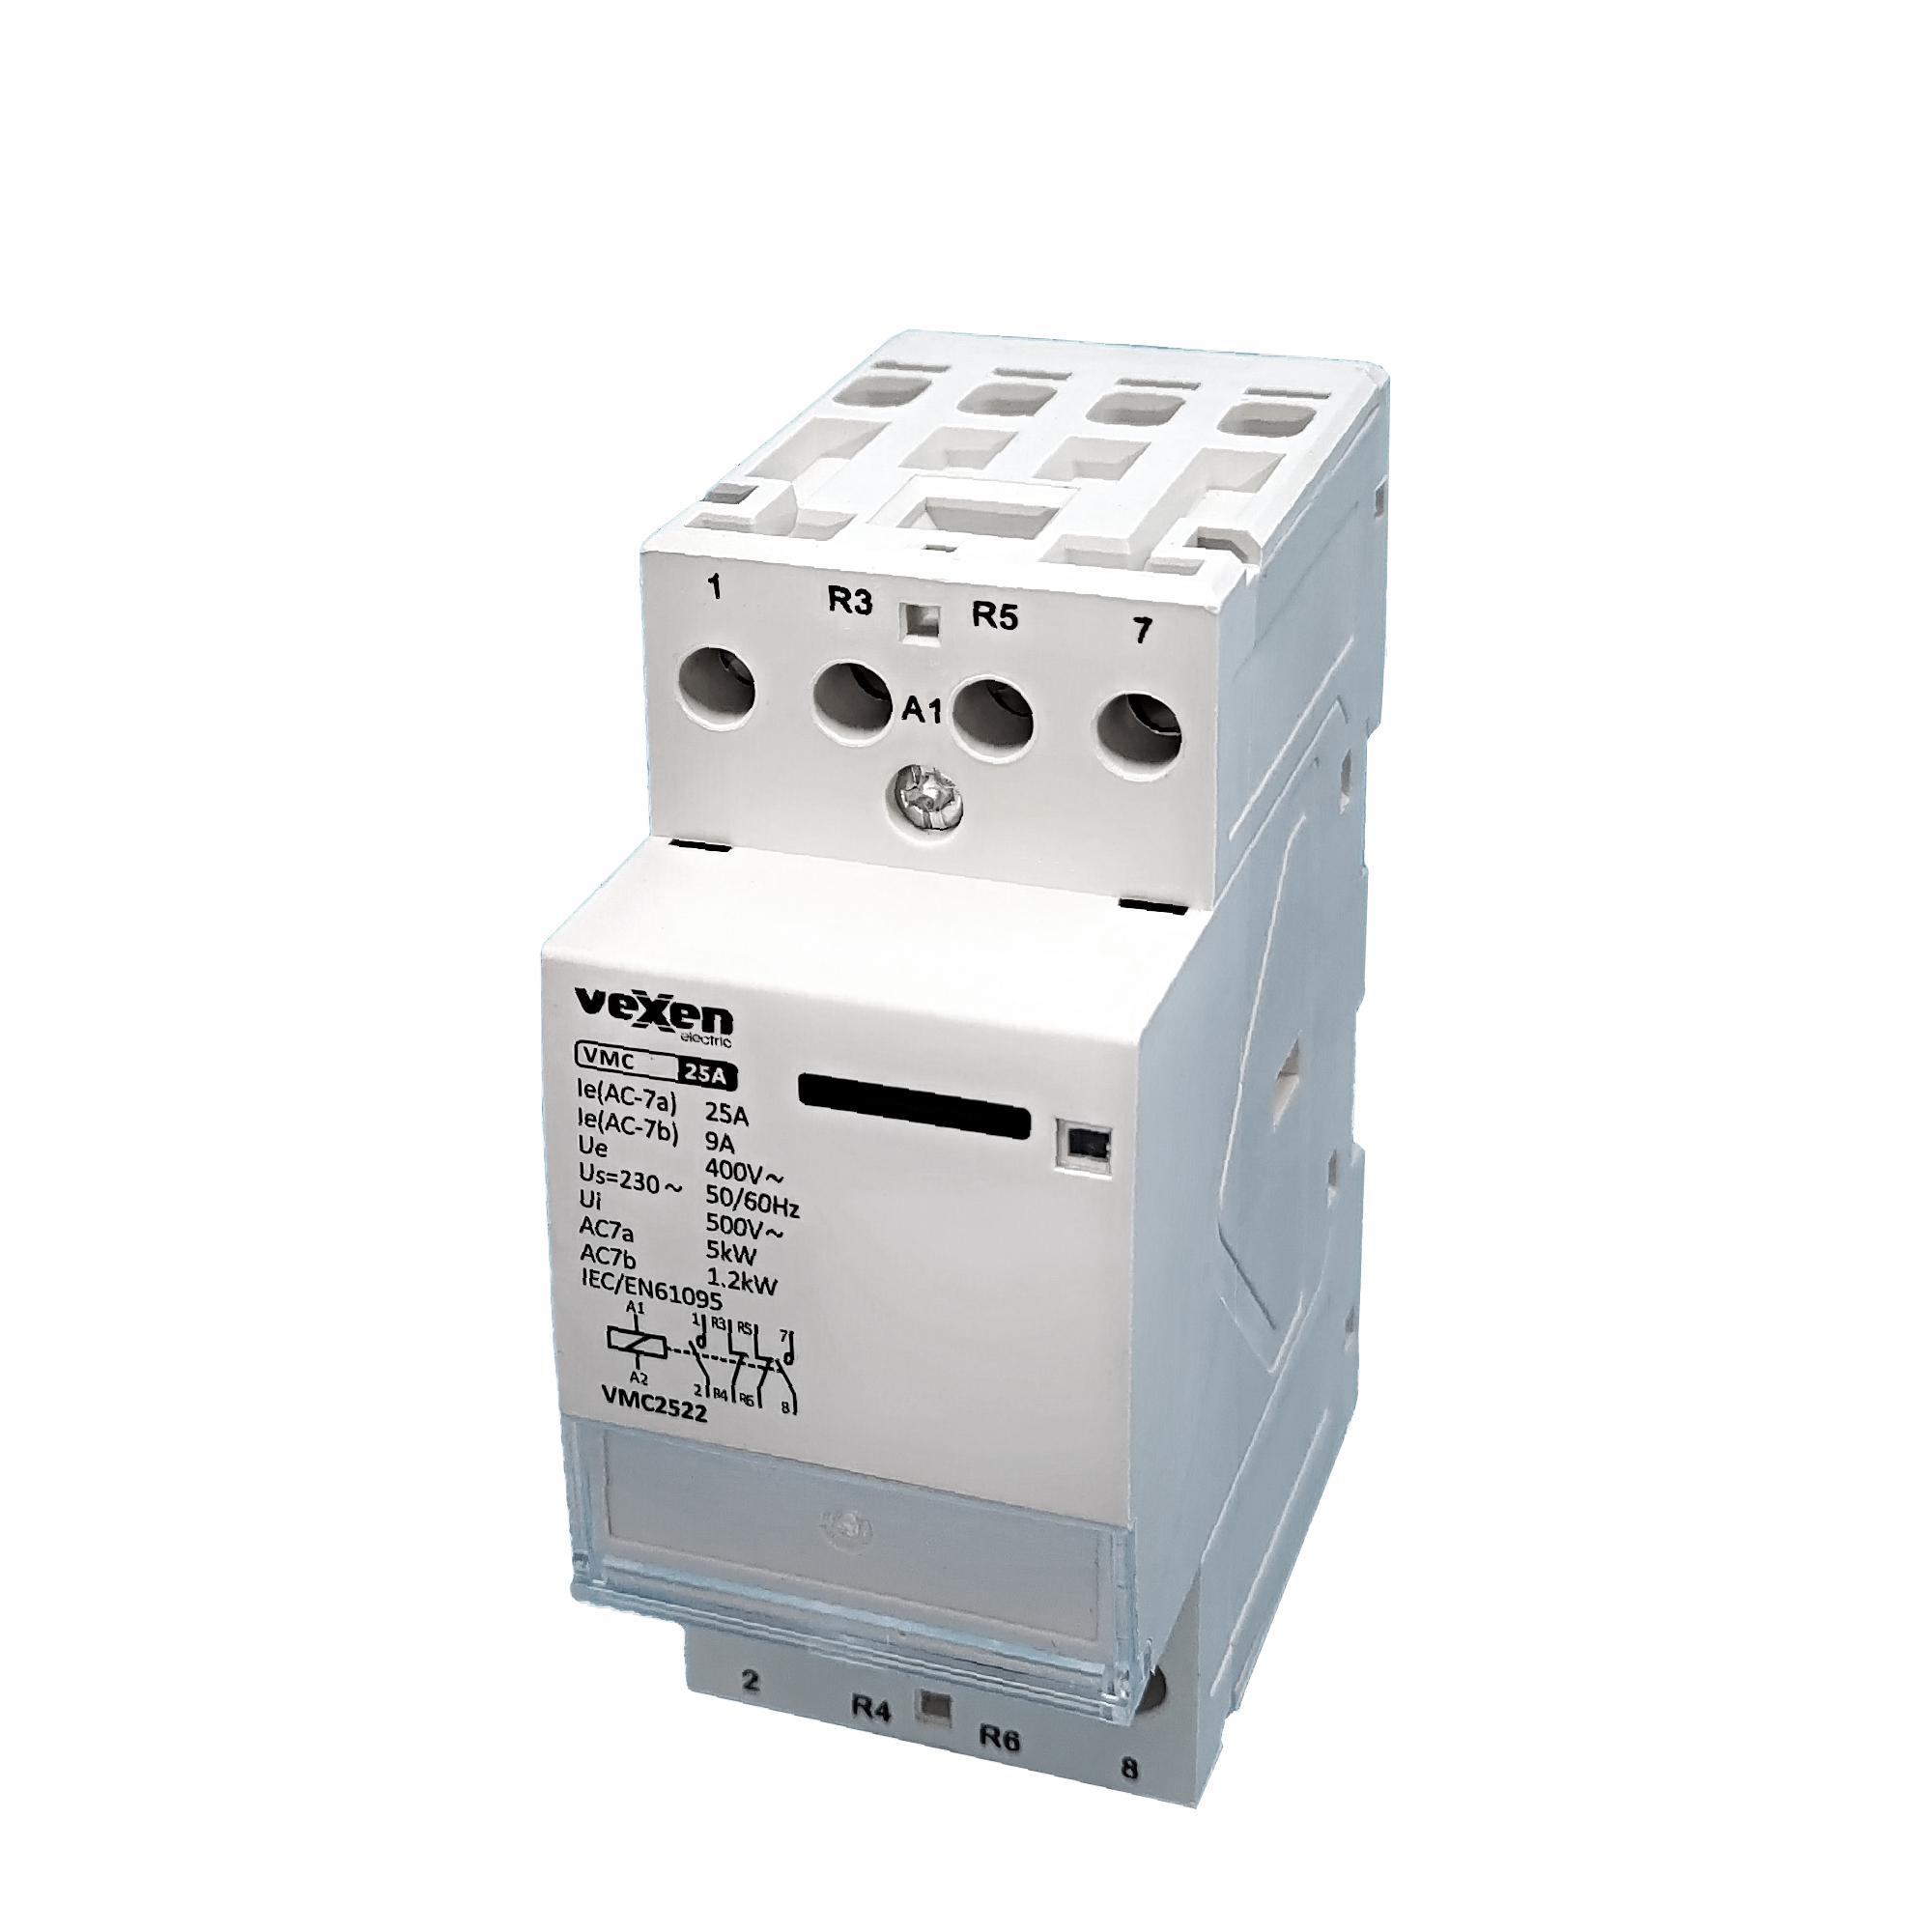 VMC2522 modular contactor 2NO, 2NC, 25A, AC230V